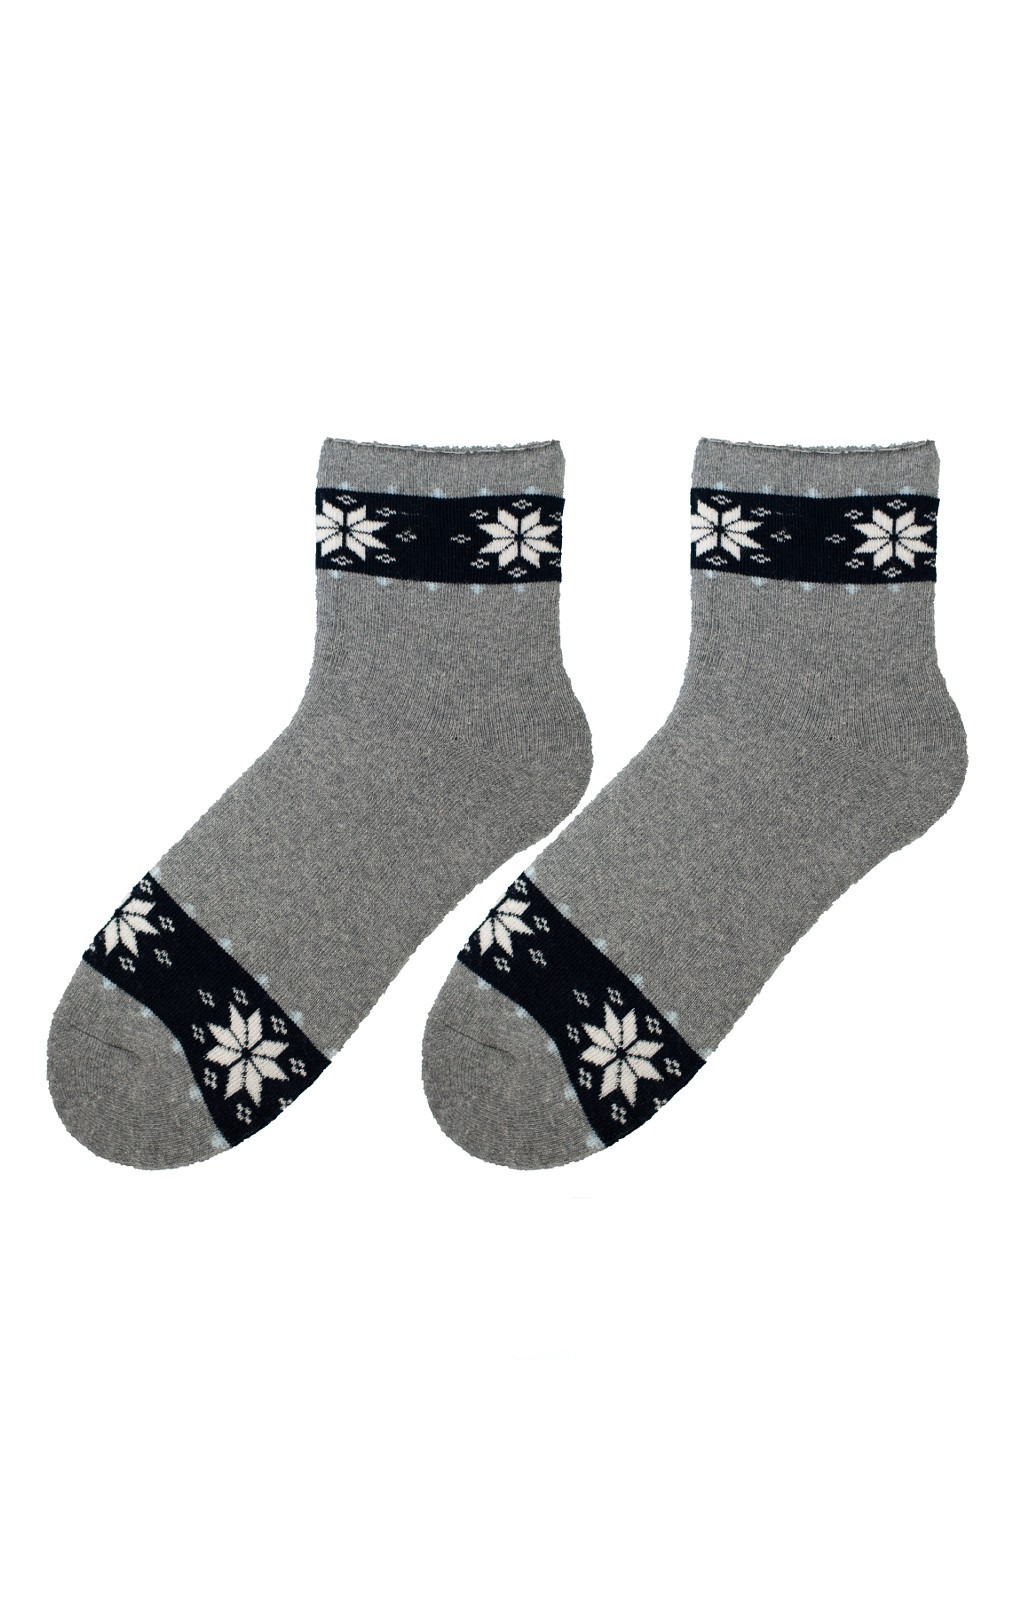 Dámské zimní vzorované ponožky Bratex D-060, 36-41 melanžově šedá 39-41